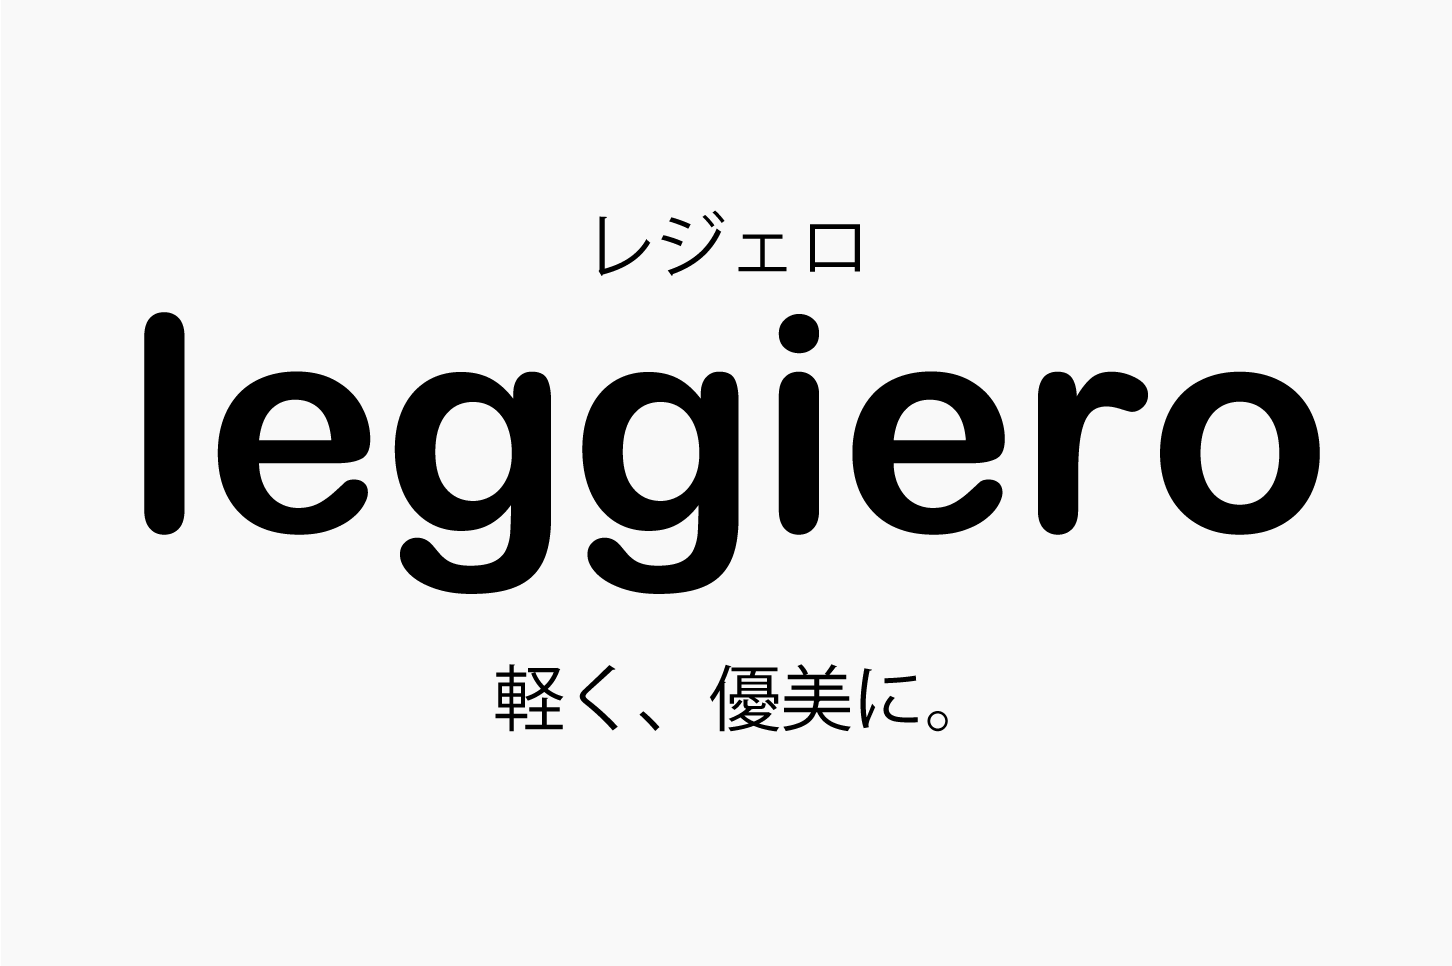 Leggiero レジェロ の意味 音楽用語辞典